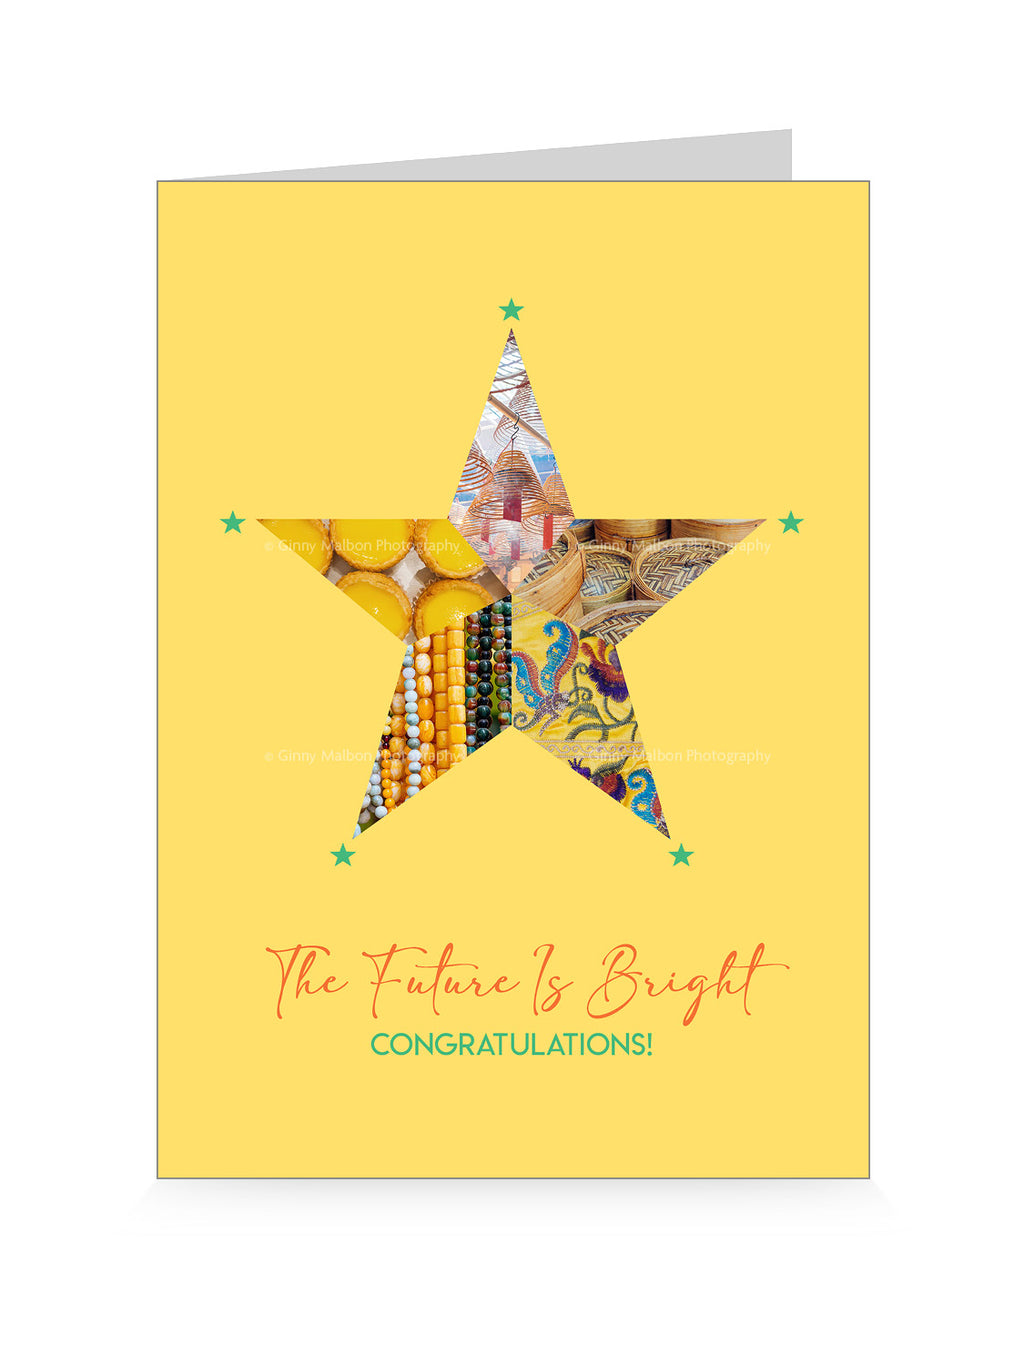 Congratulations Card (The Future is Bright, Congratulations)